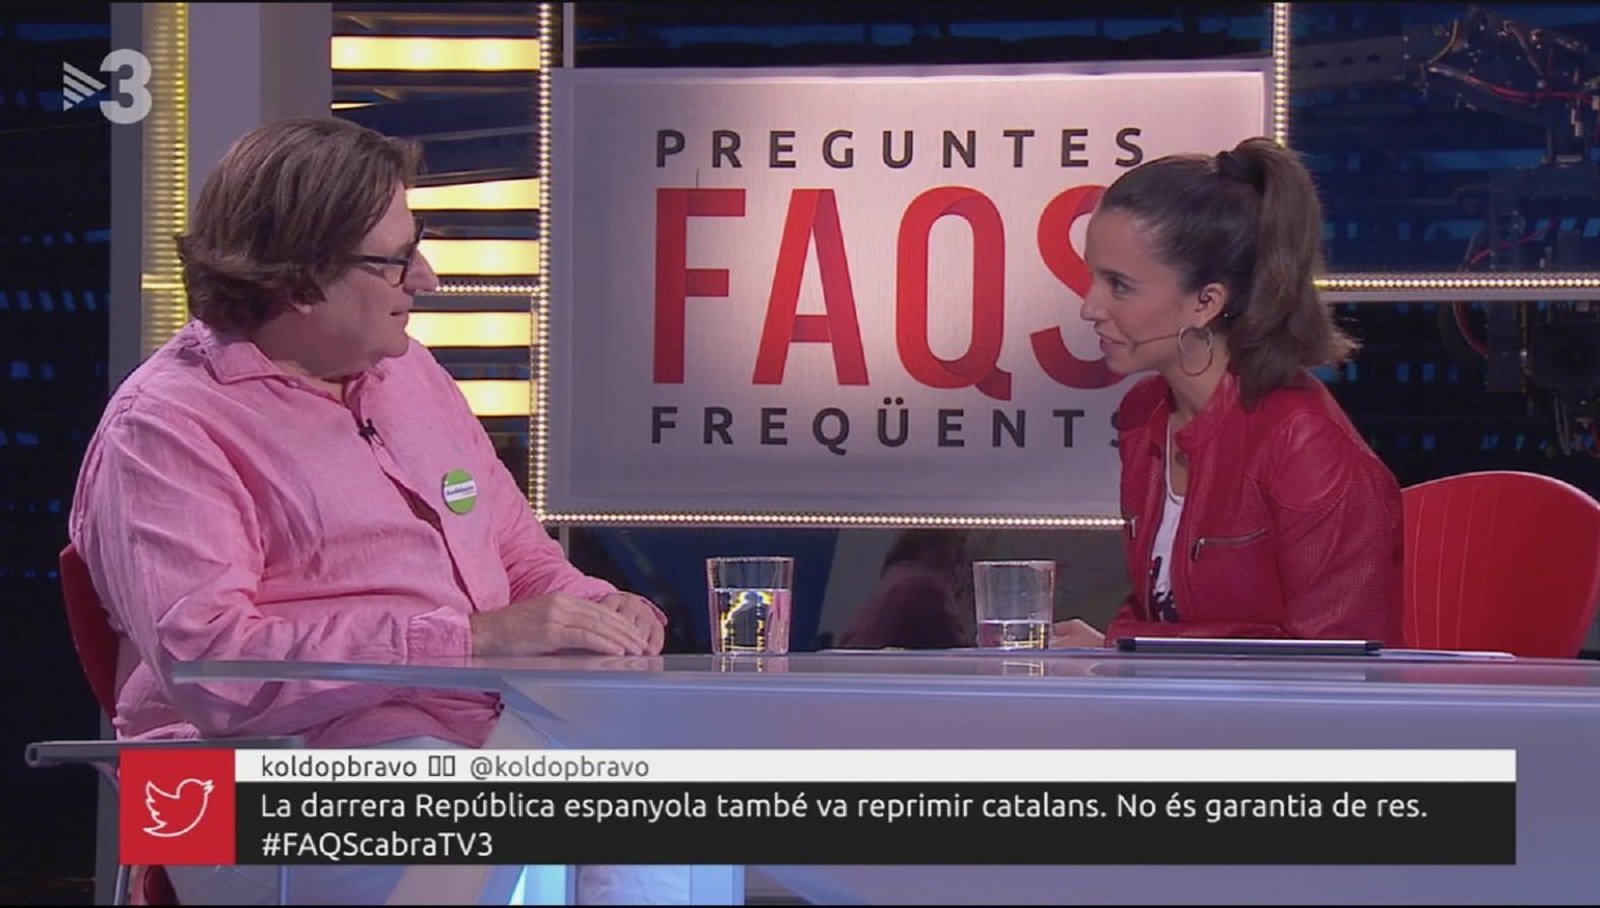 Pedro Altamirano explica els països andalusos a TV3 i l'espanyolisme s'irrita